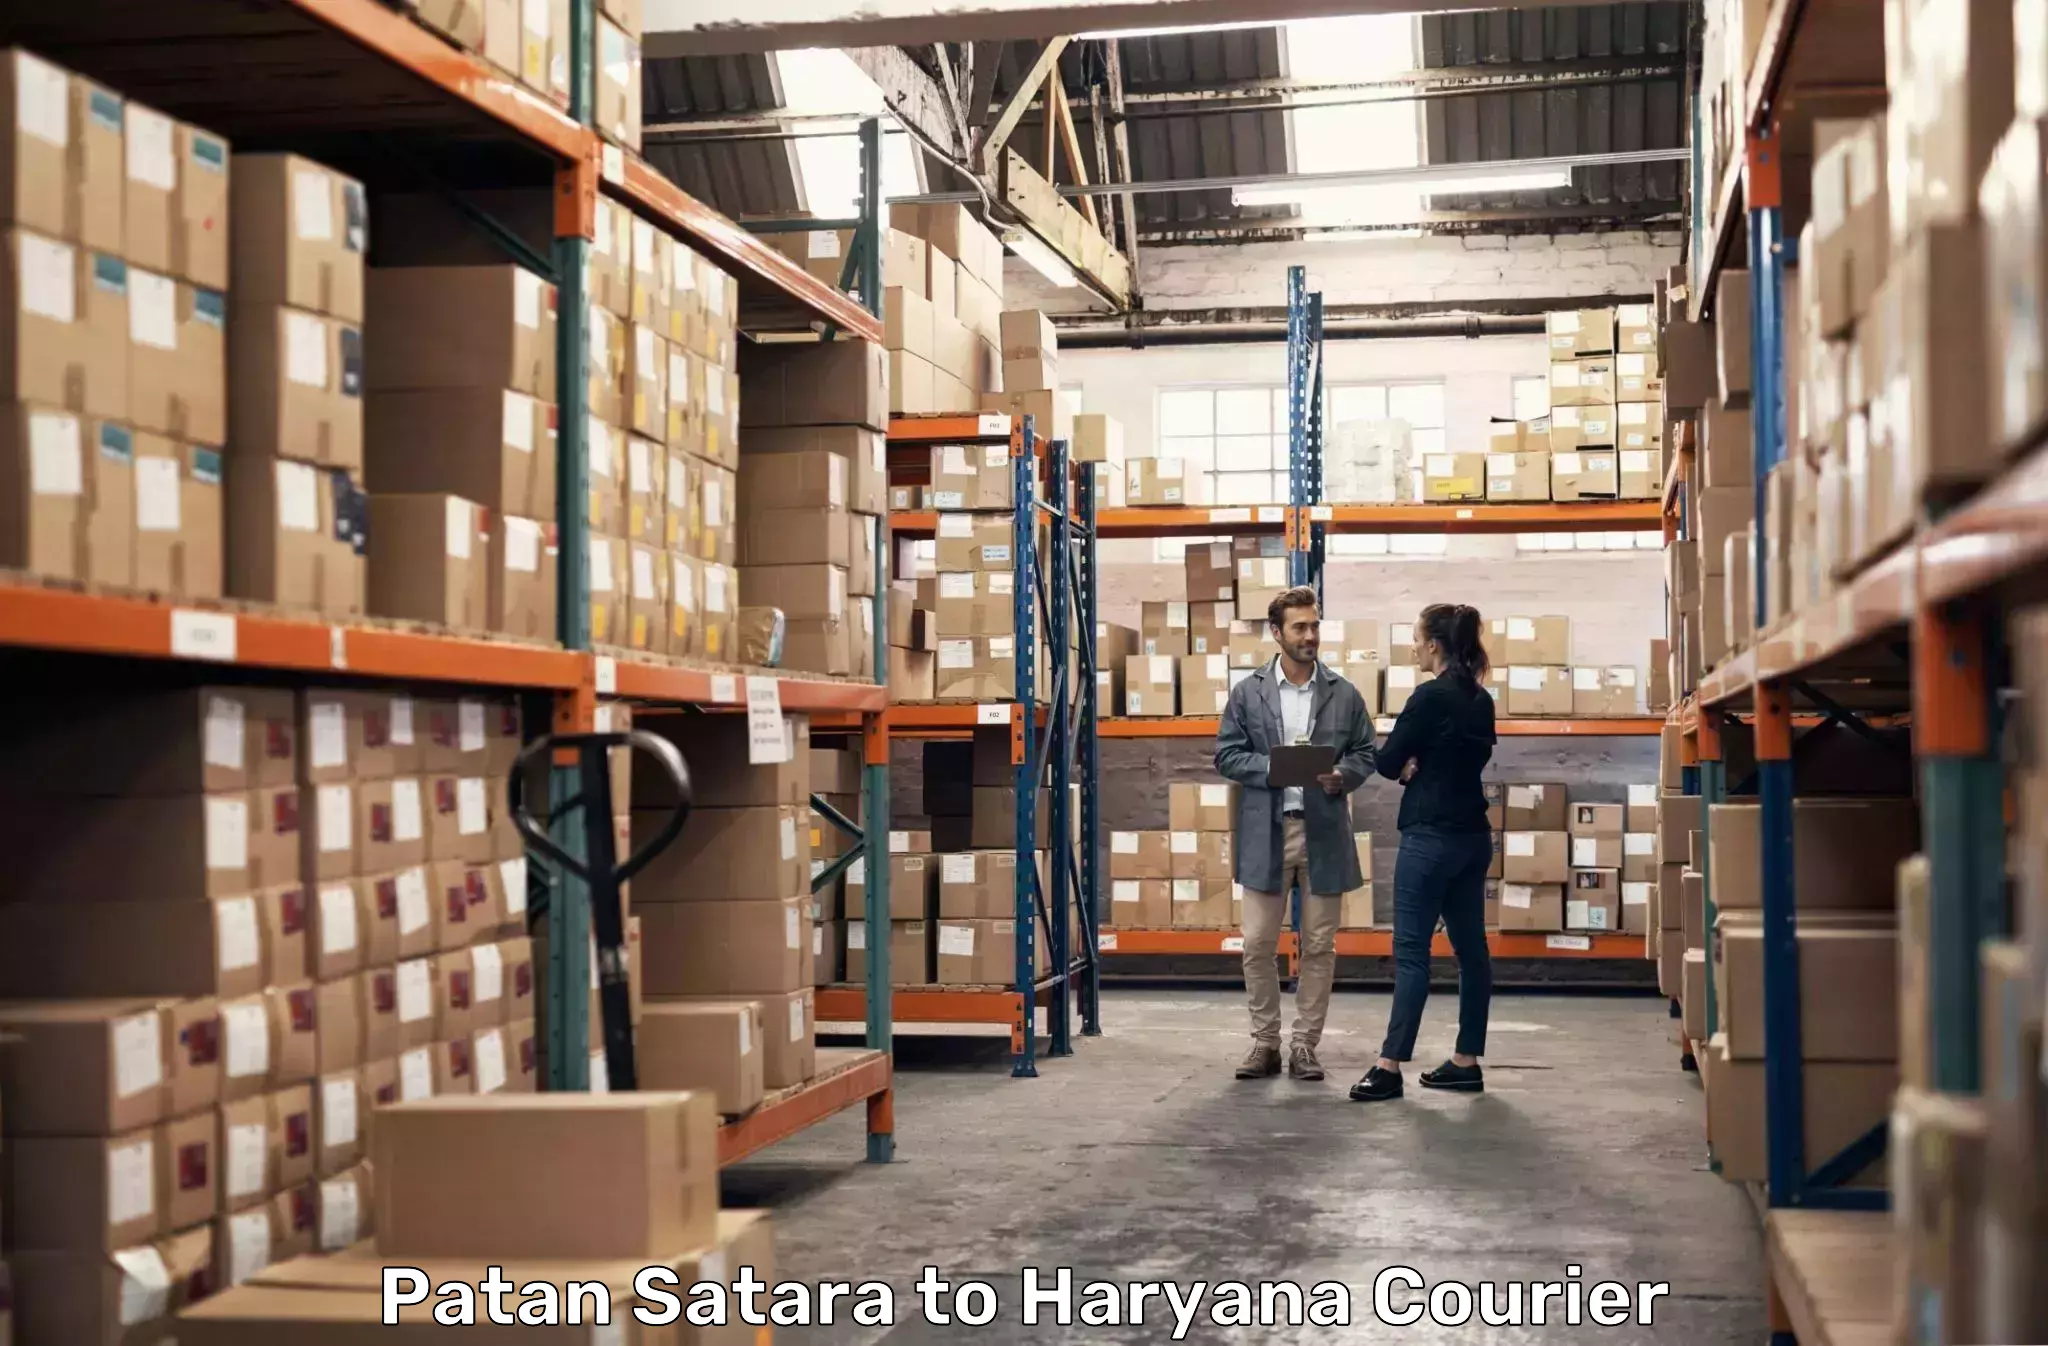 Regular parcel service Patan Satara to Jhajjar